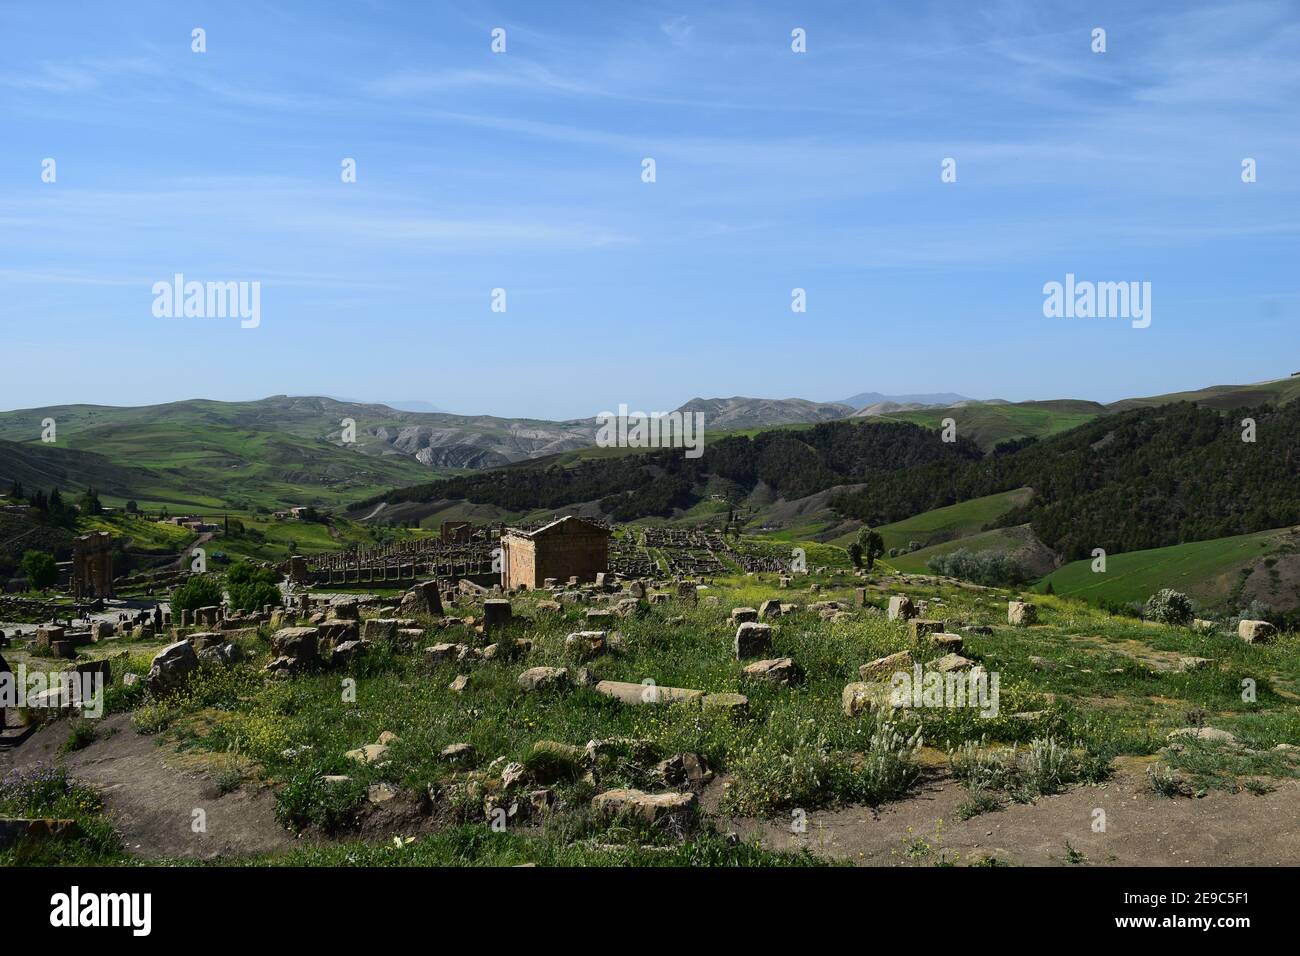 Vue imprenable sur les ruines romaines de la ville de Djemila, Setif, Algérie Banque D'Images